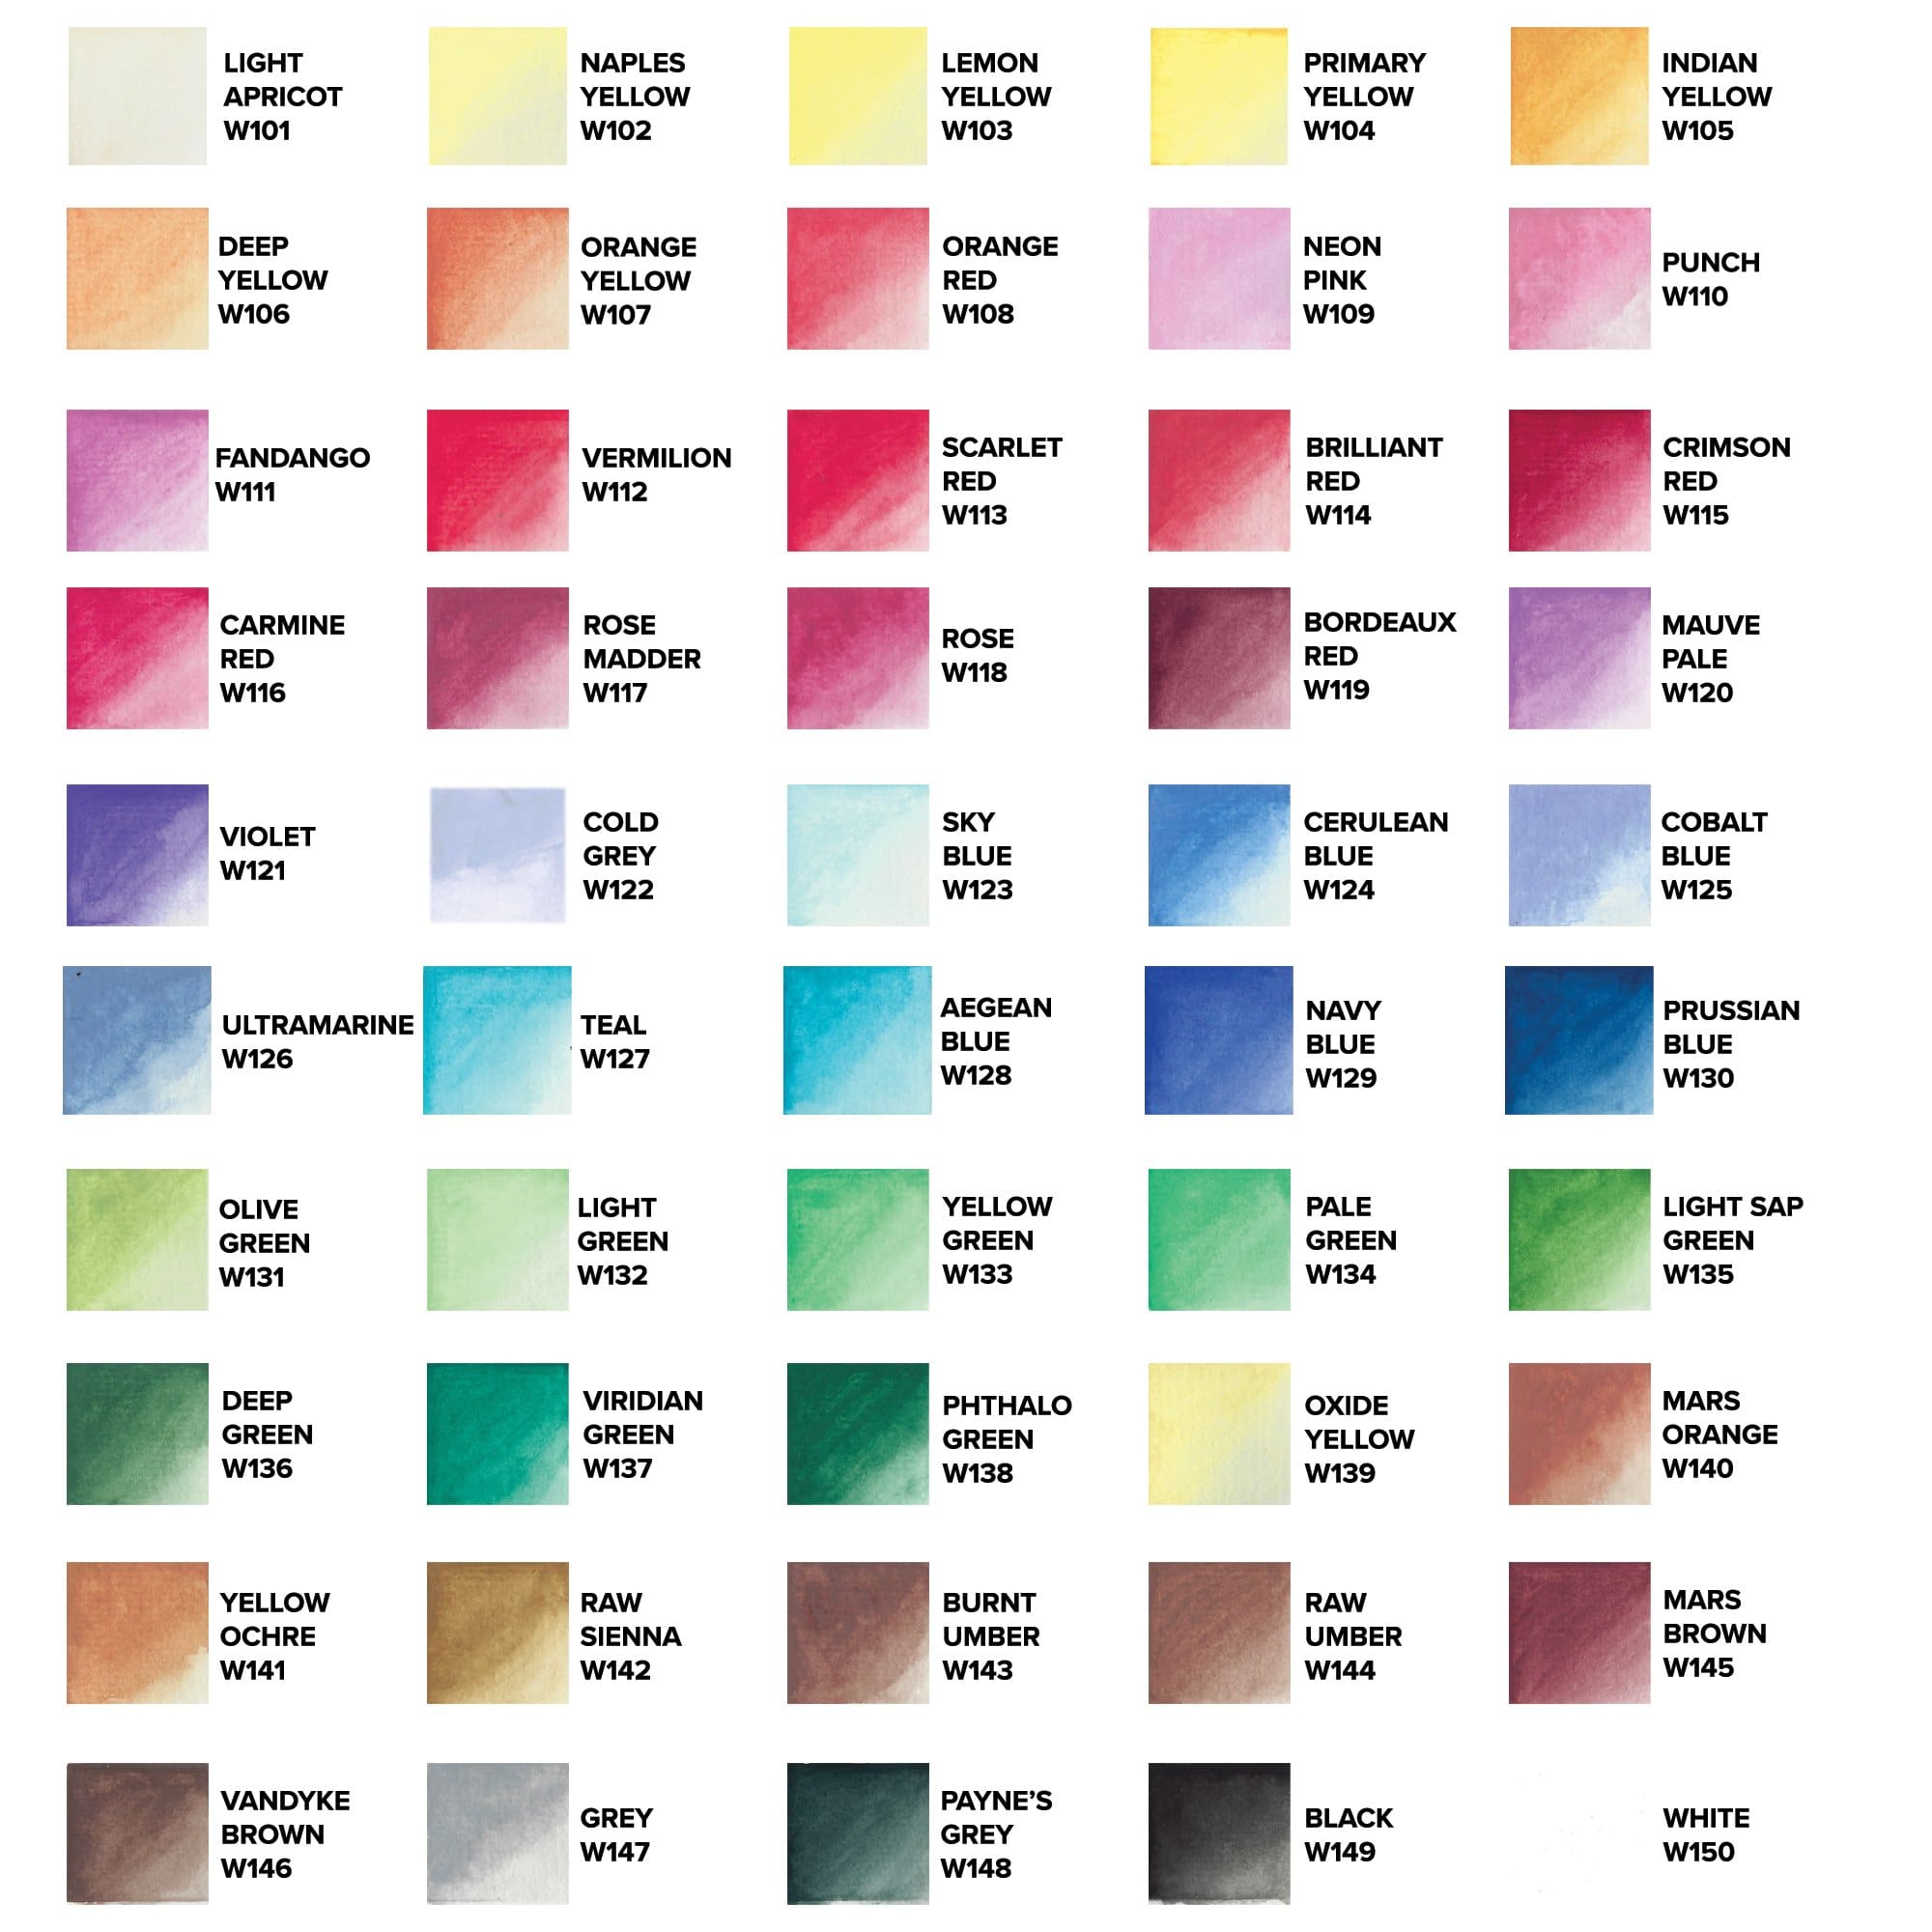 Watercolor Paint Tubes - 50 Colors